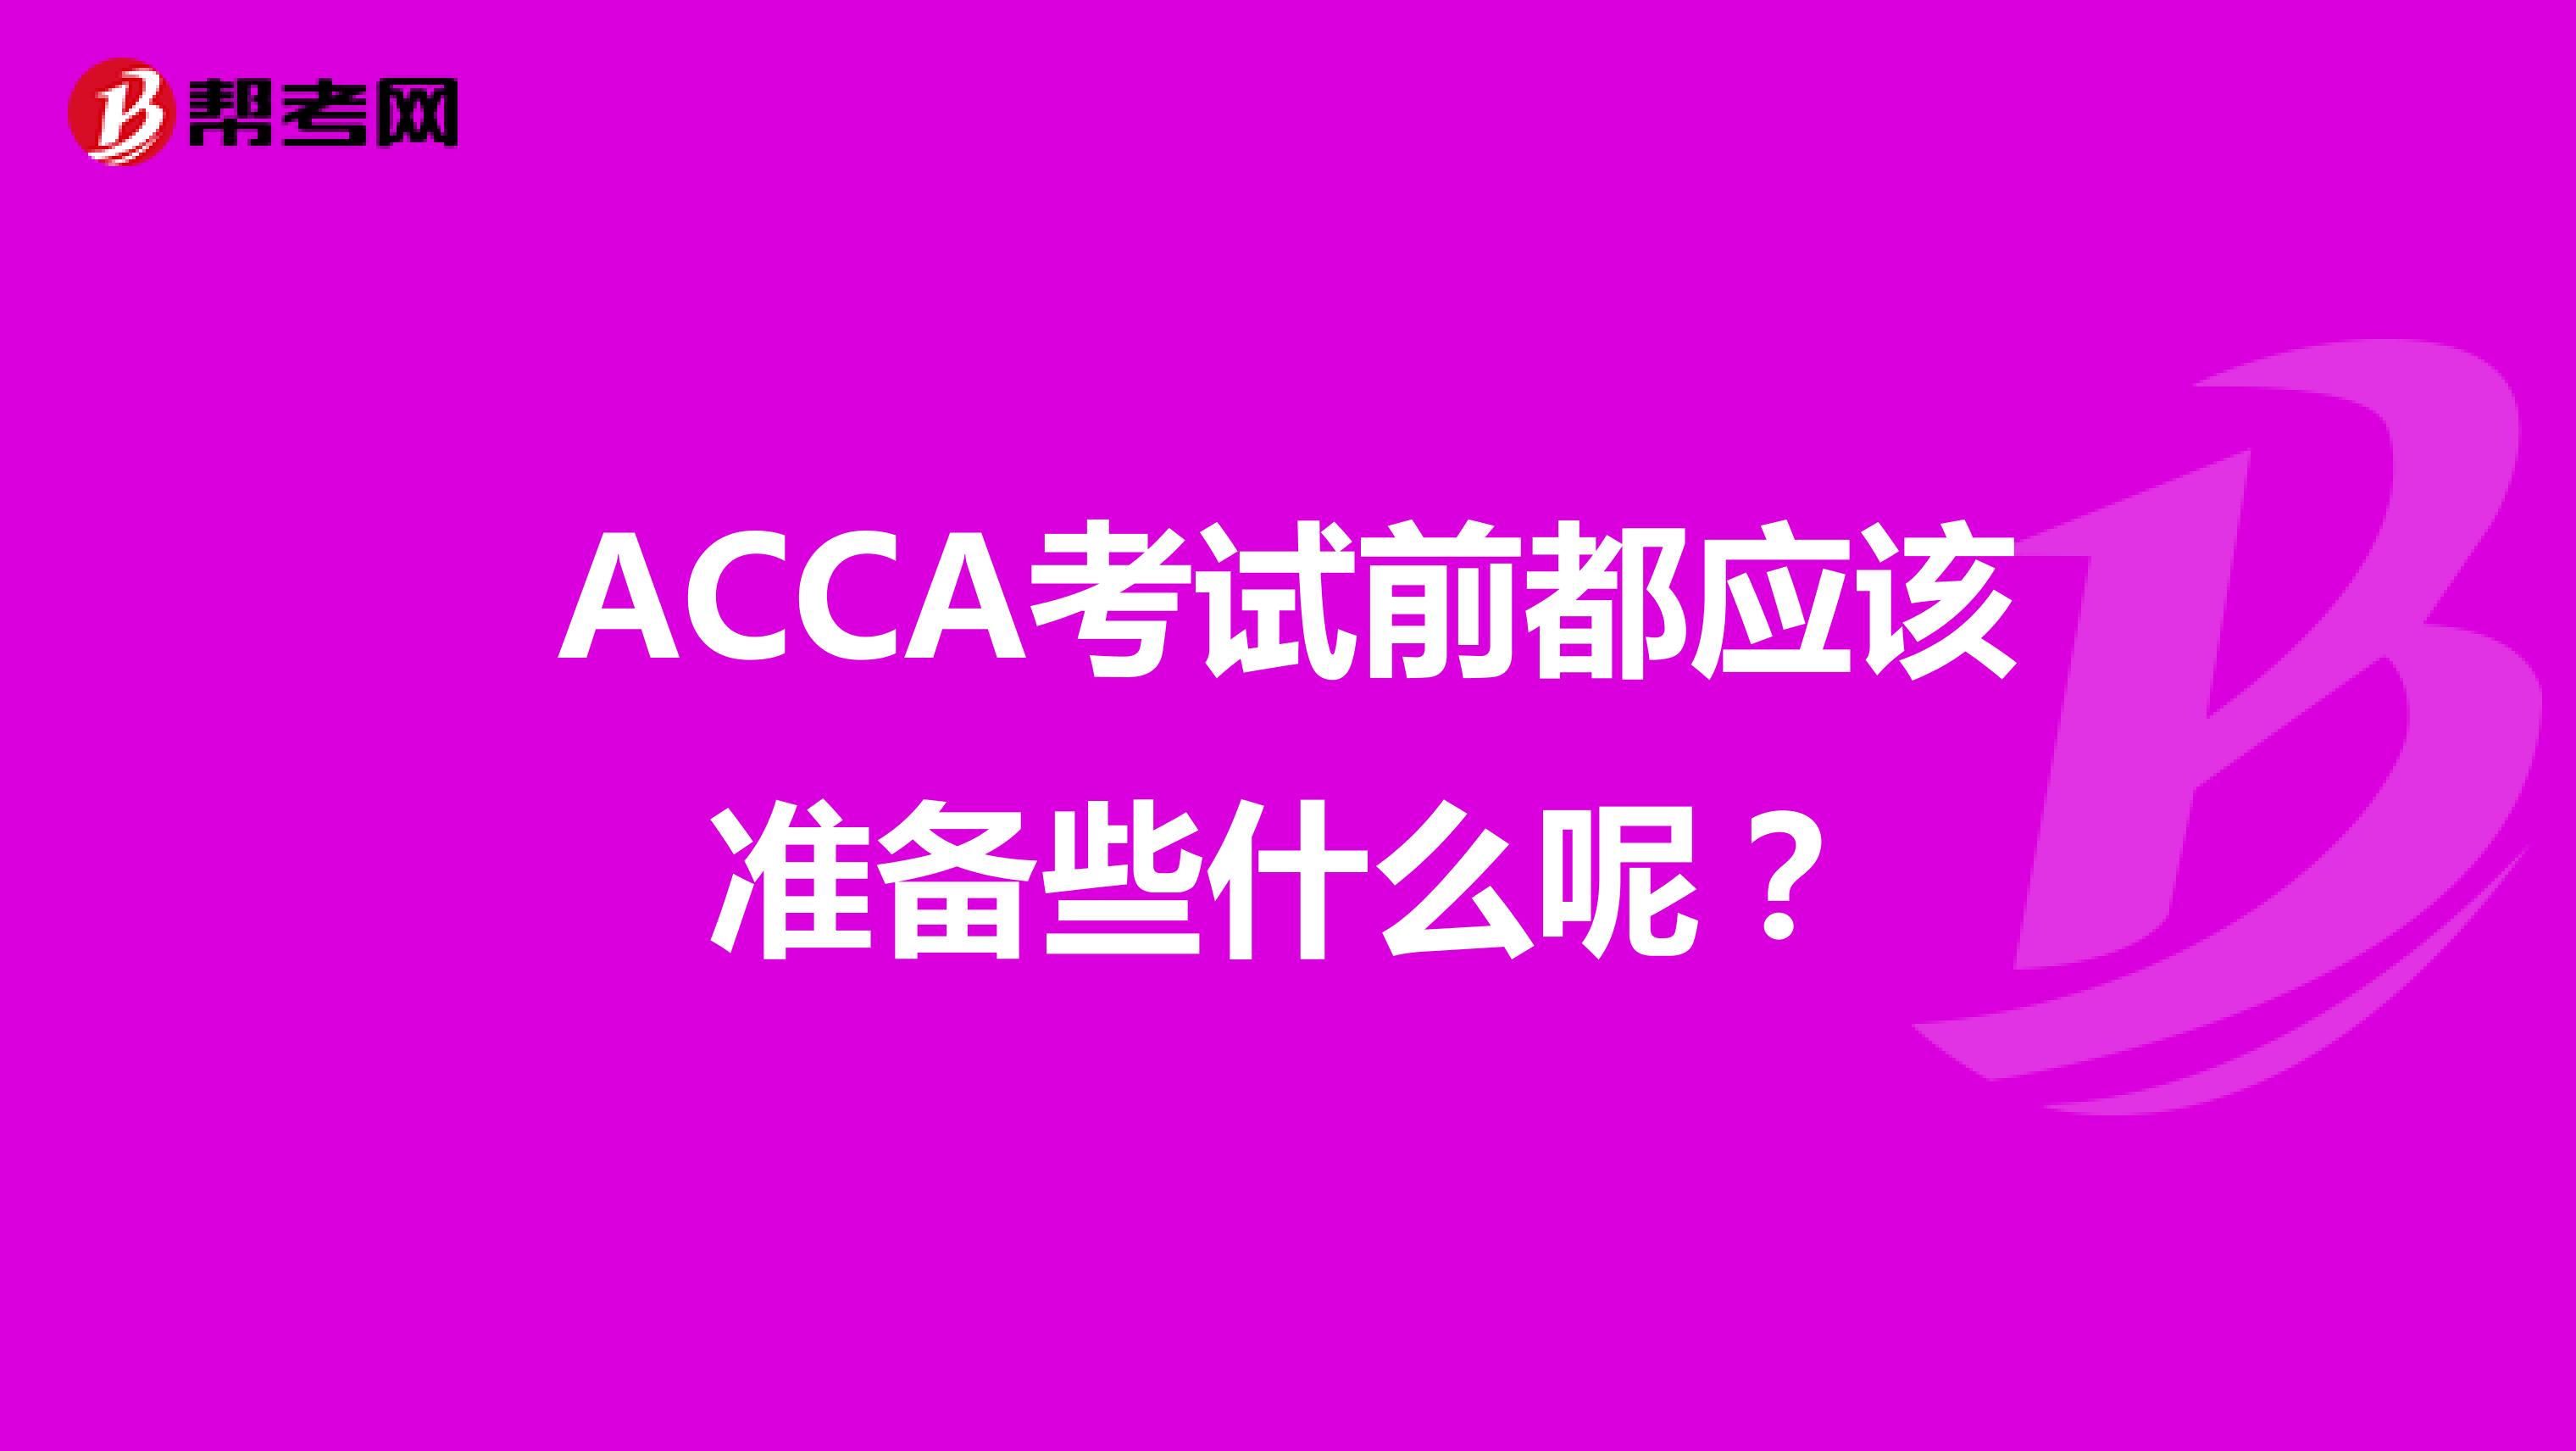 ACCA考试前都应该准备些什么呢？